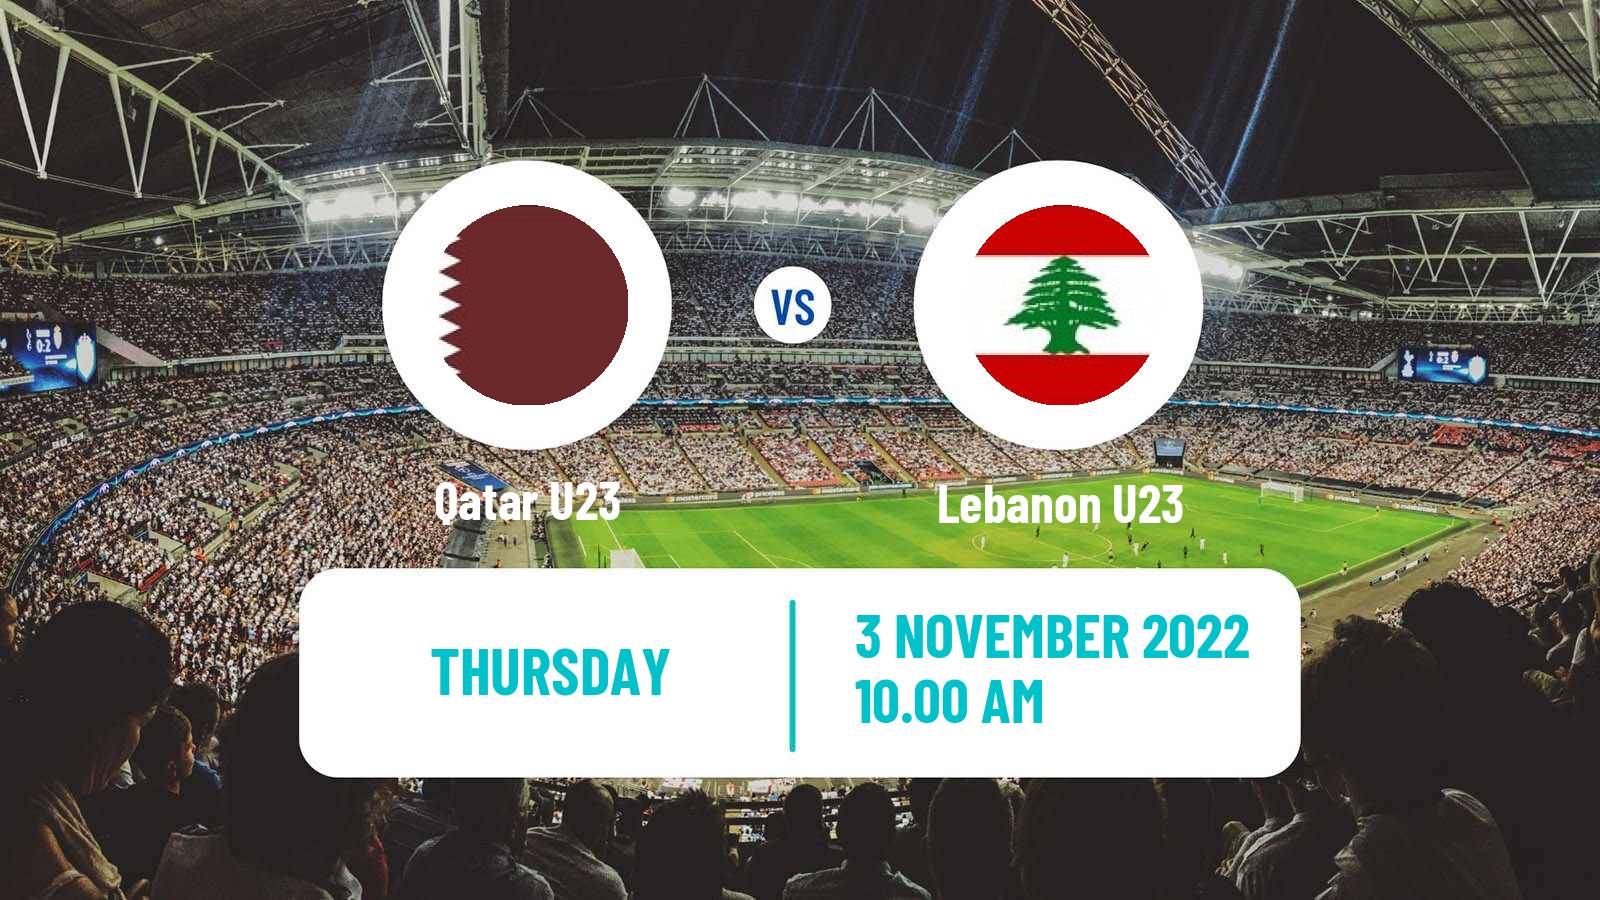 Soccer Friendly Qatar U23 - Lebanon U23